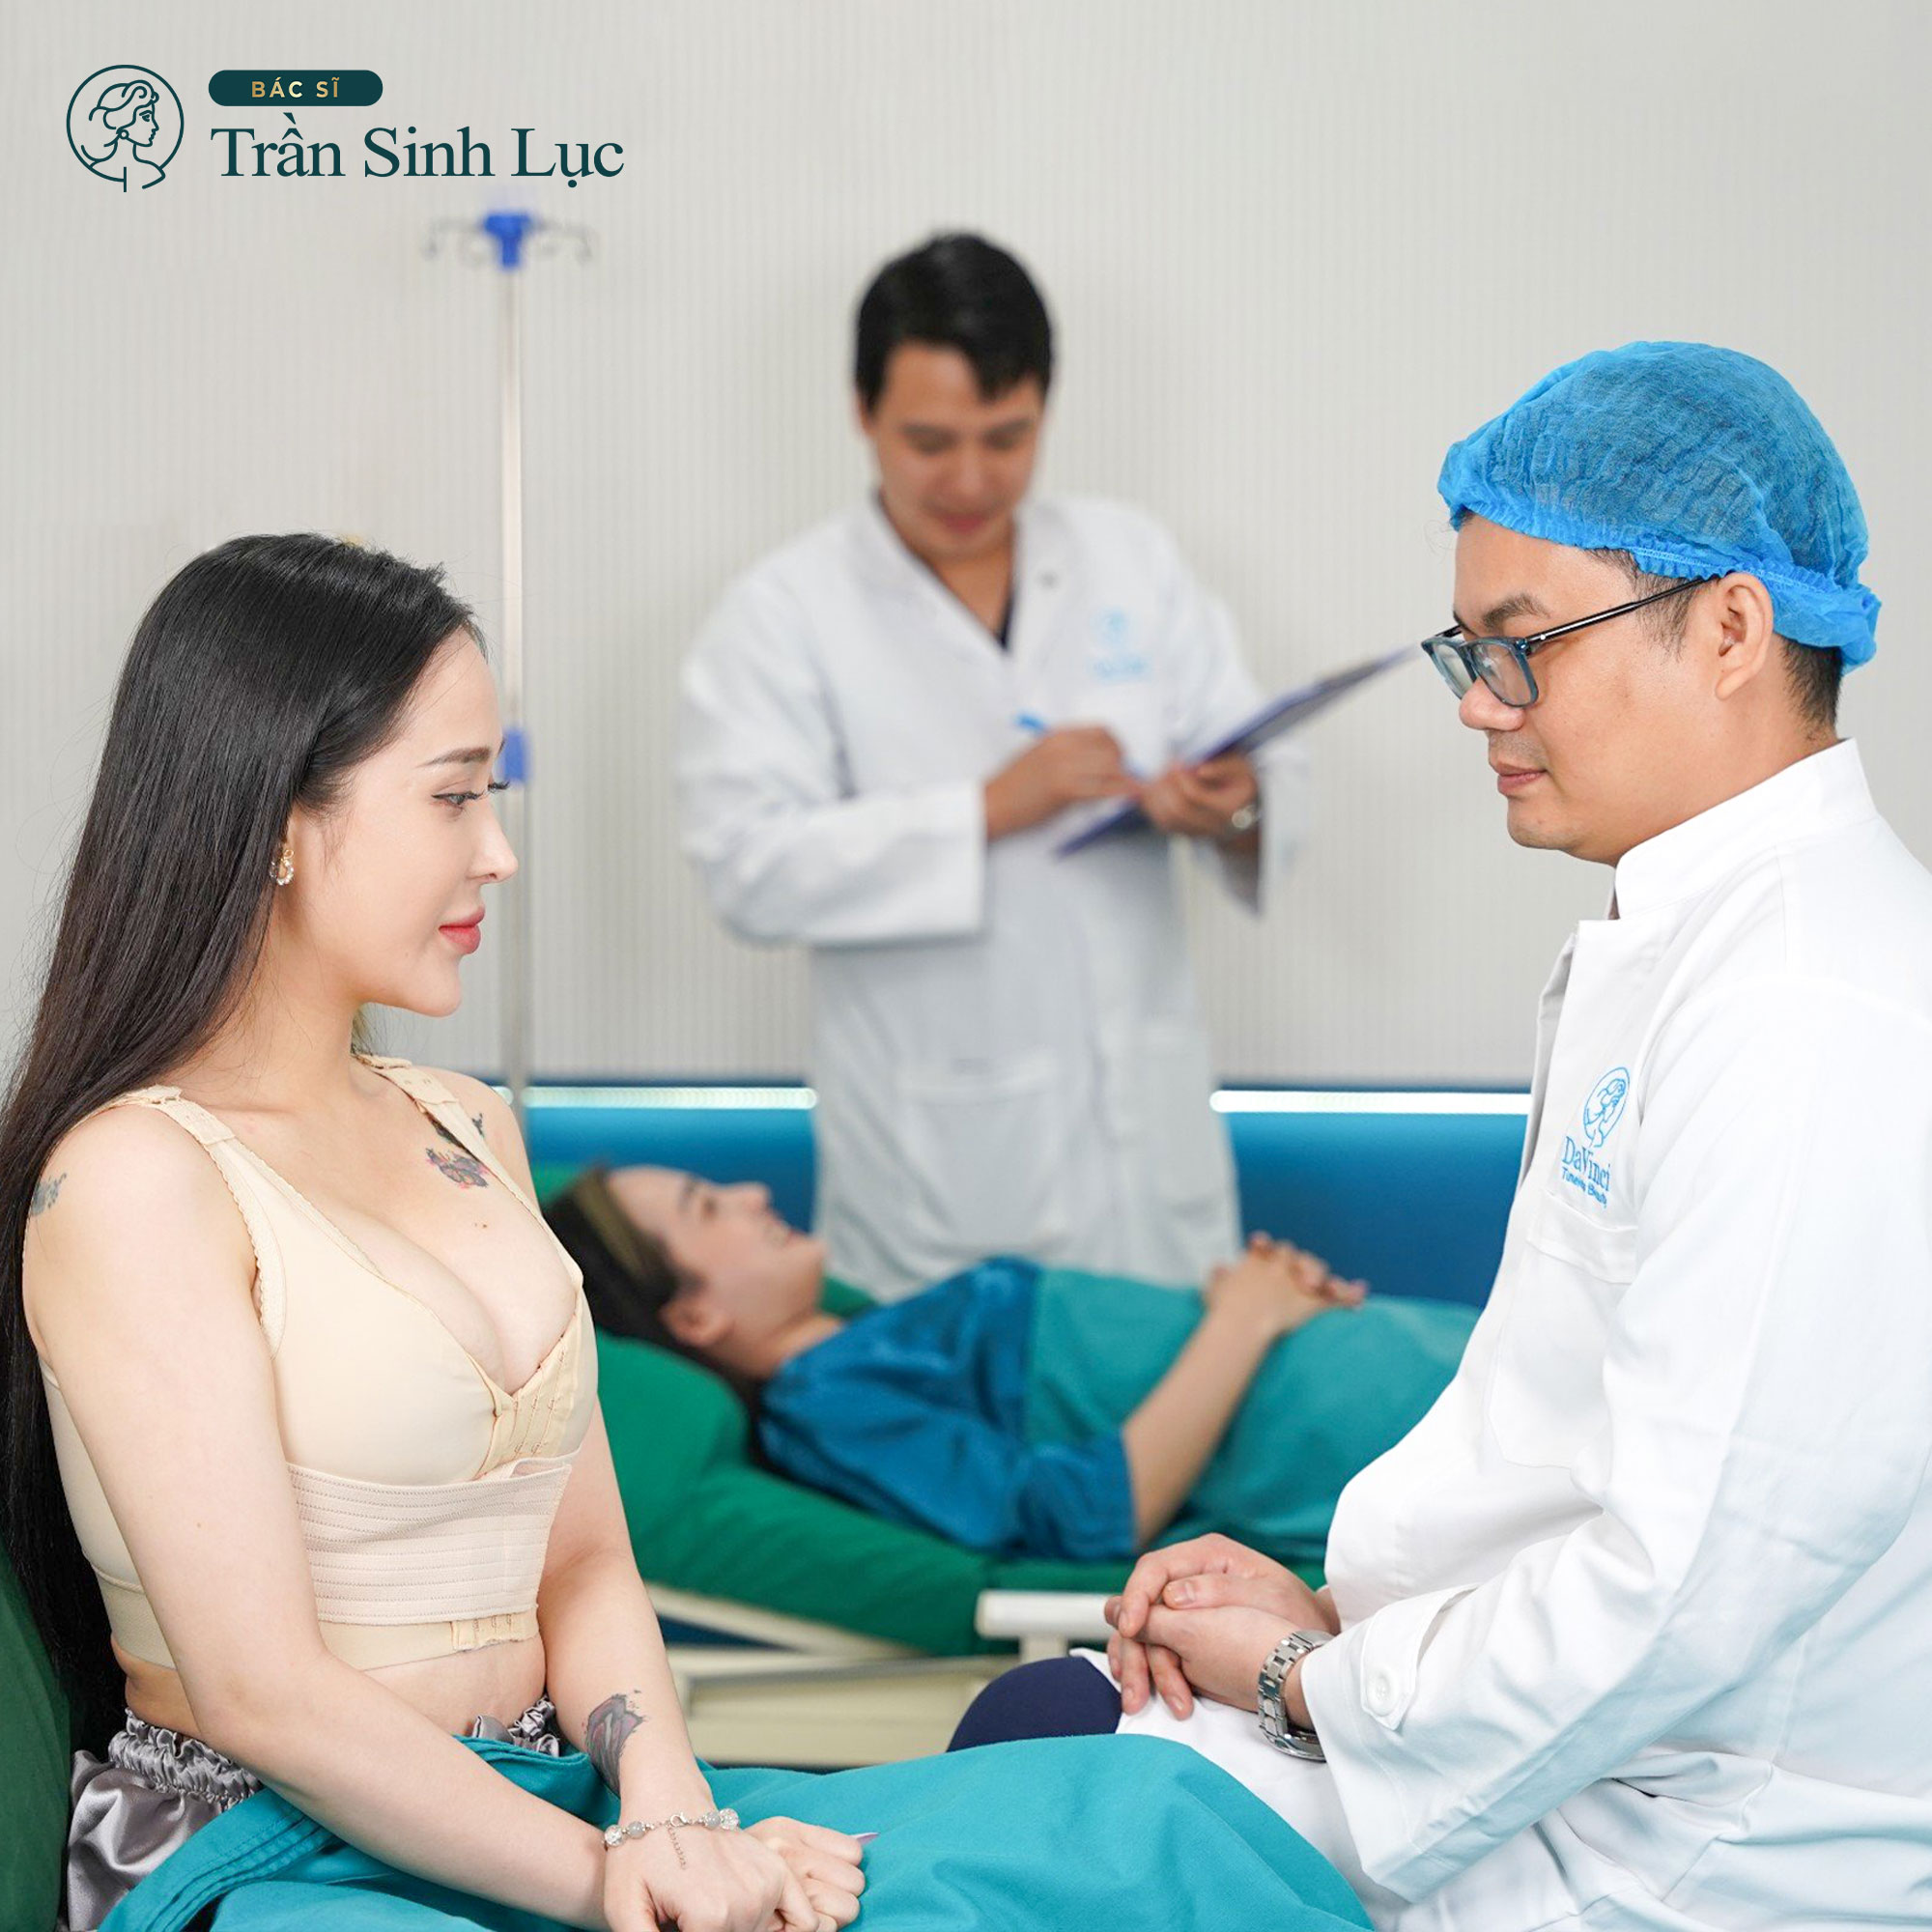 Bác sĩ Trần Sinh Lục - “Đôi tay vàng” thẩm mỹ vòng 1 được nhiều Việt kiều tin tưởng - 3